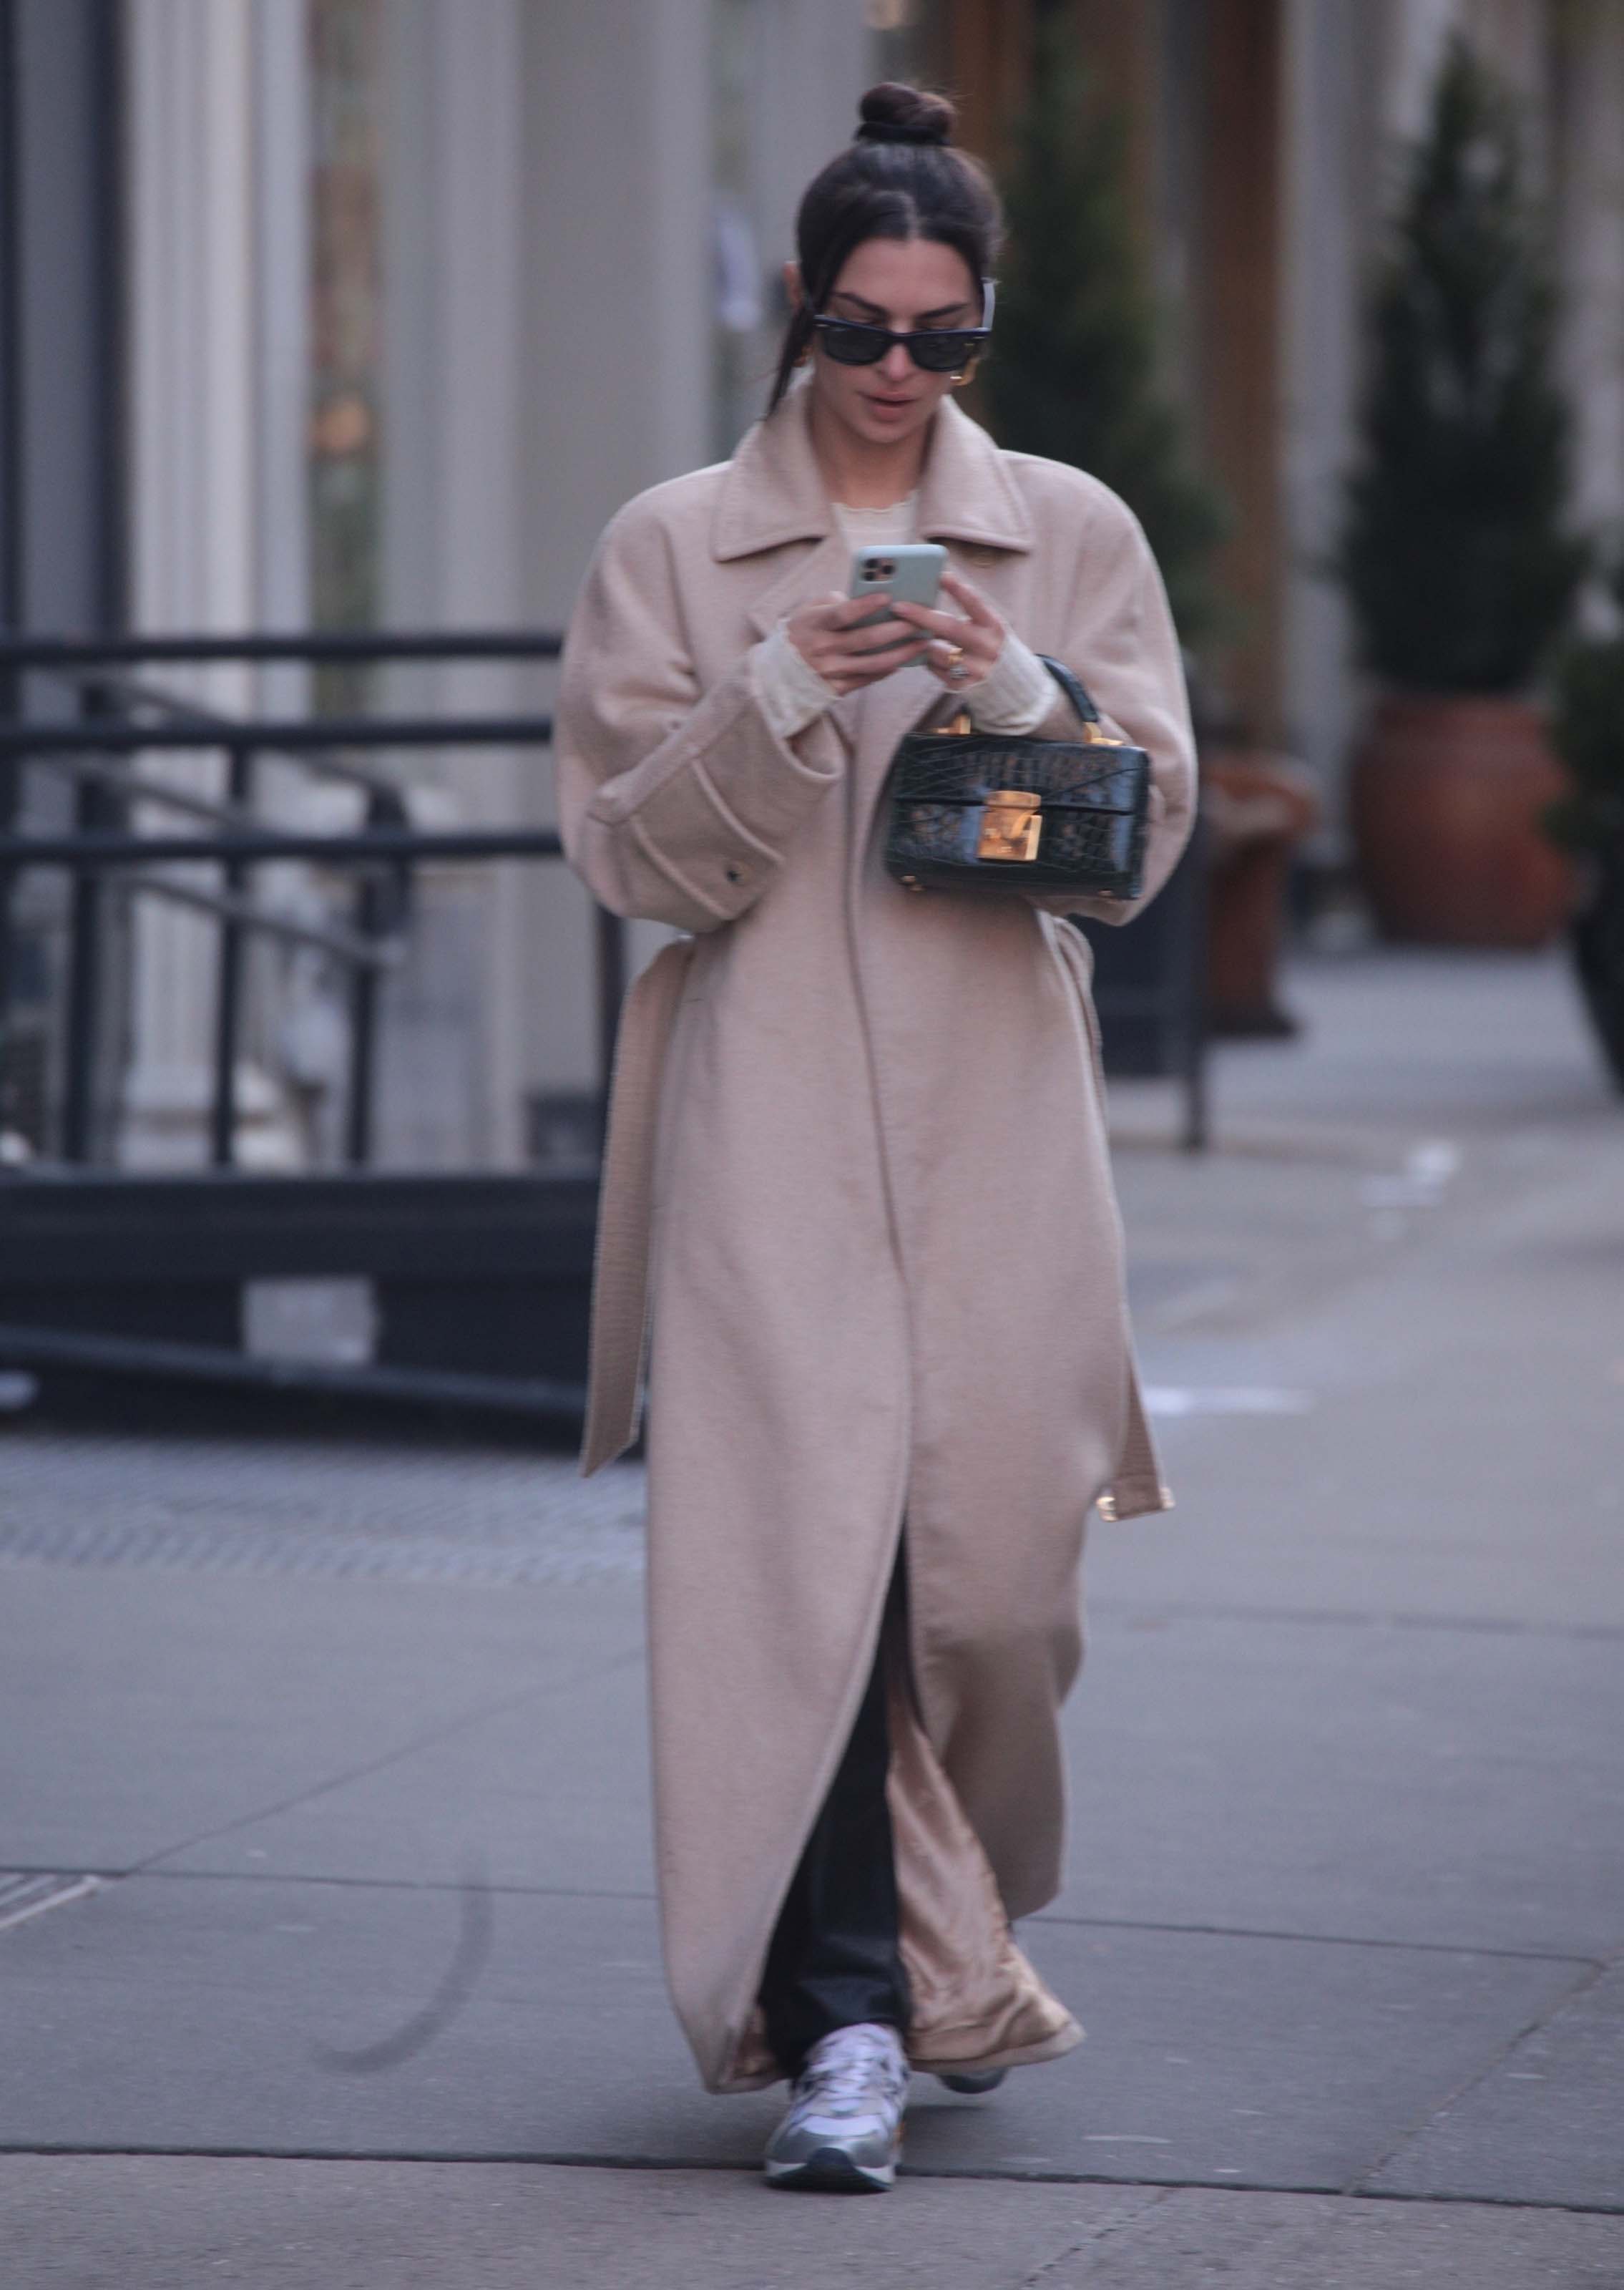 Emily Ratajkowski out in New York